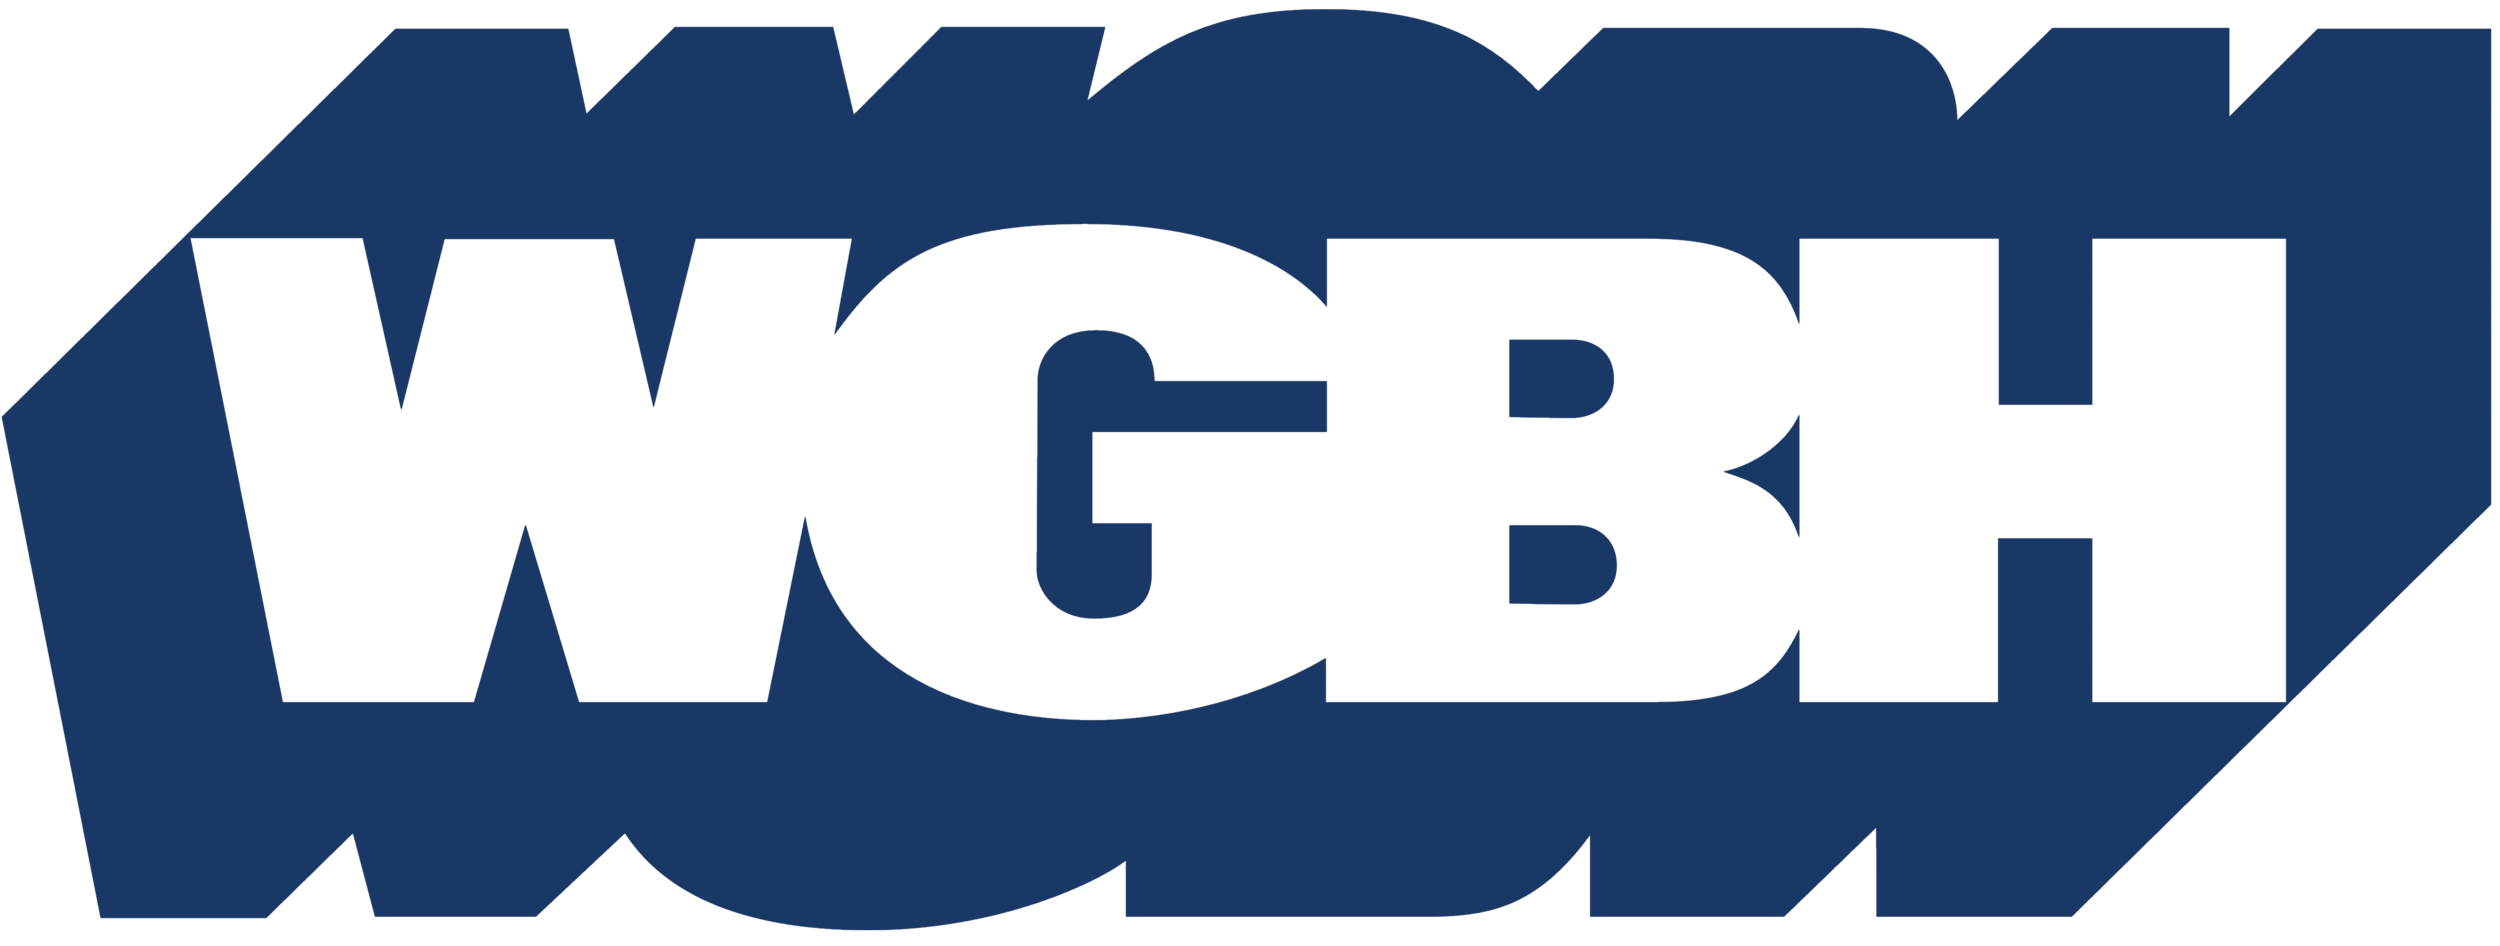 WGBH_logo_logotype.png